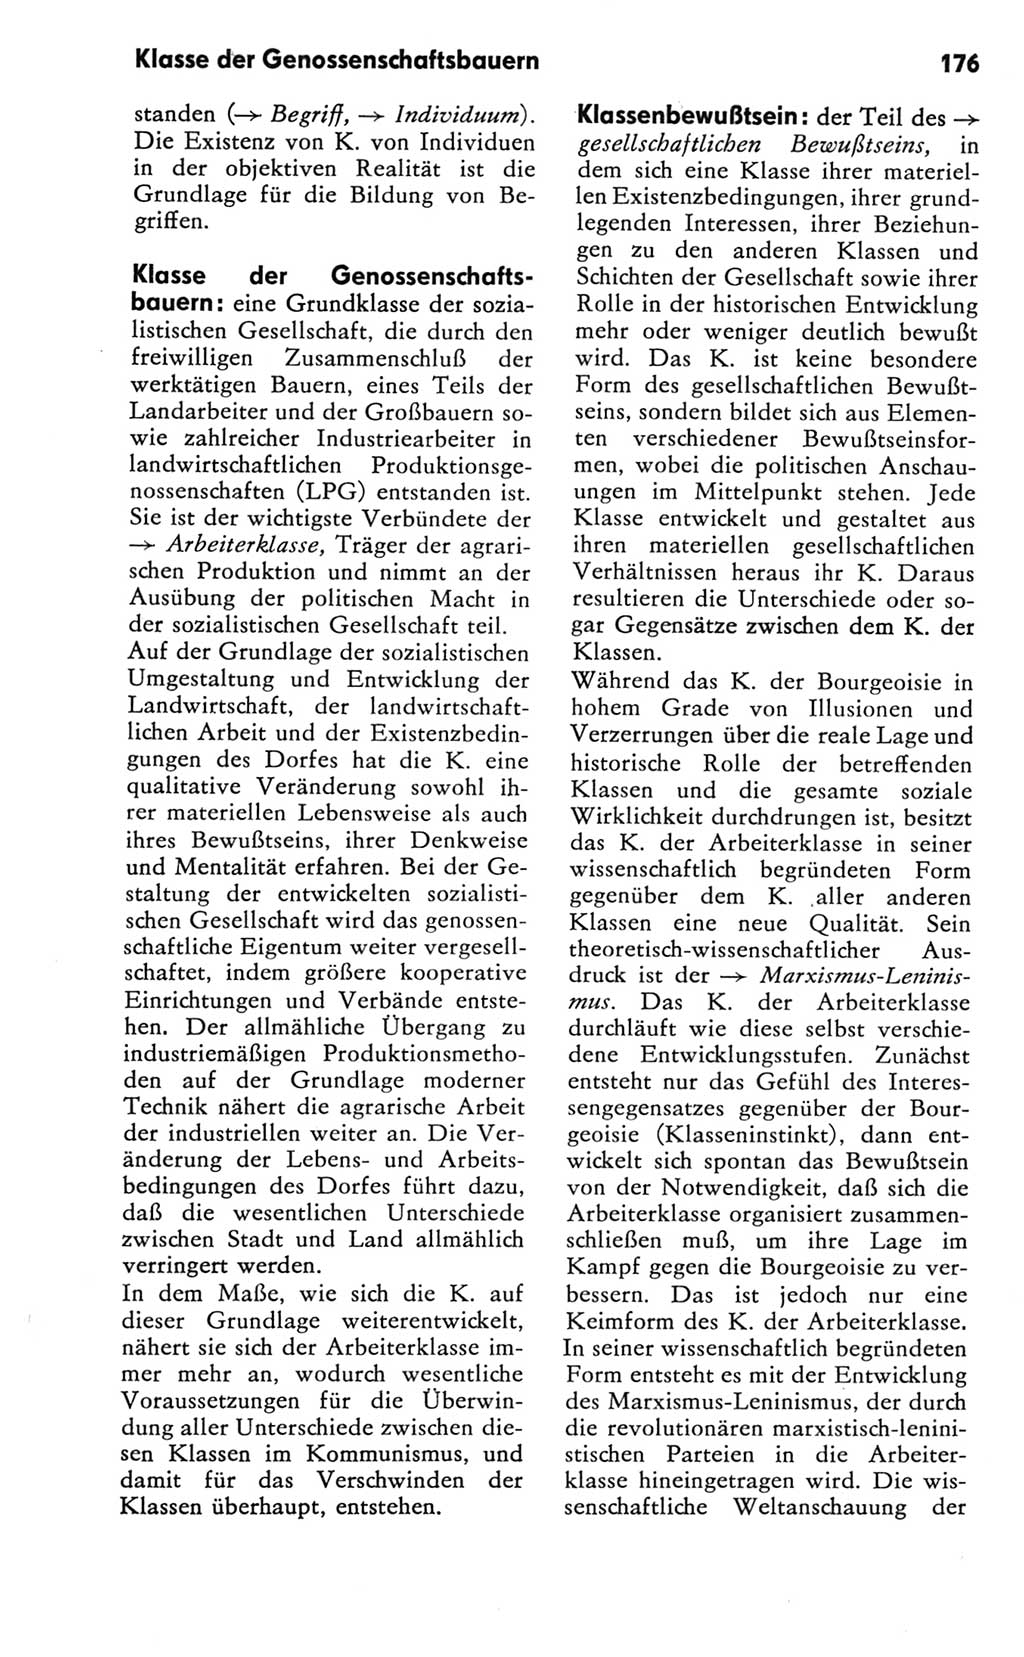 Kleines Wörterbuch der marxistisch-leninistischen Philosophie [Deutsche Demokratische Republik (DDR)] 1981, Seite 176 (Kl. Wb. ML Phil. DDR 1981, S. 176)